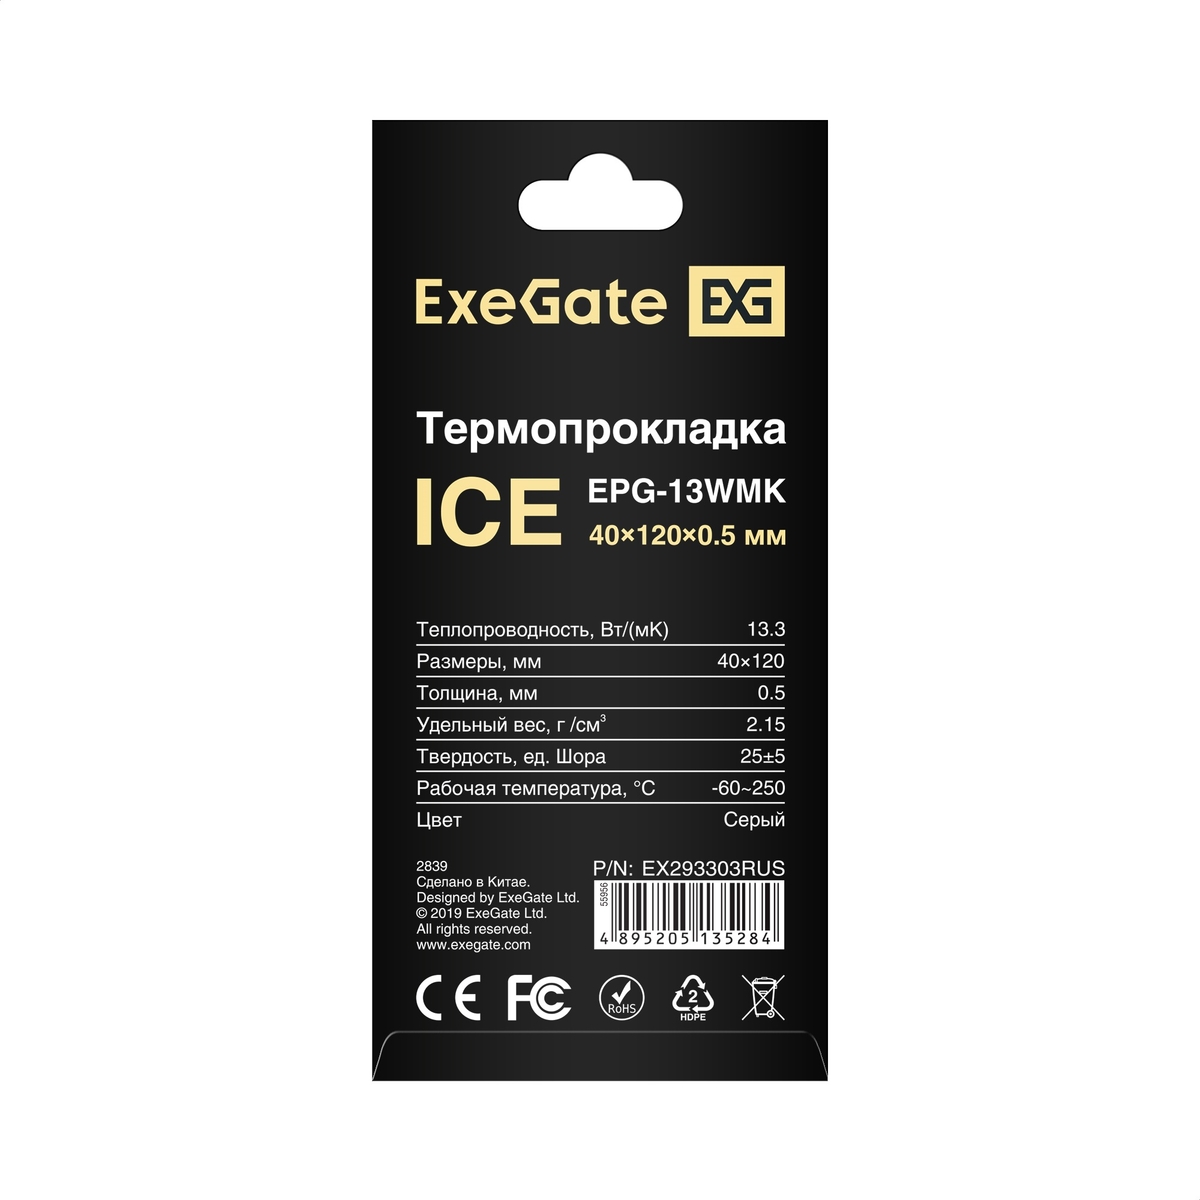  ExeGate Ice EPG-13WMK 40x120x0.5